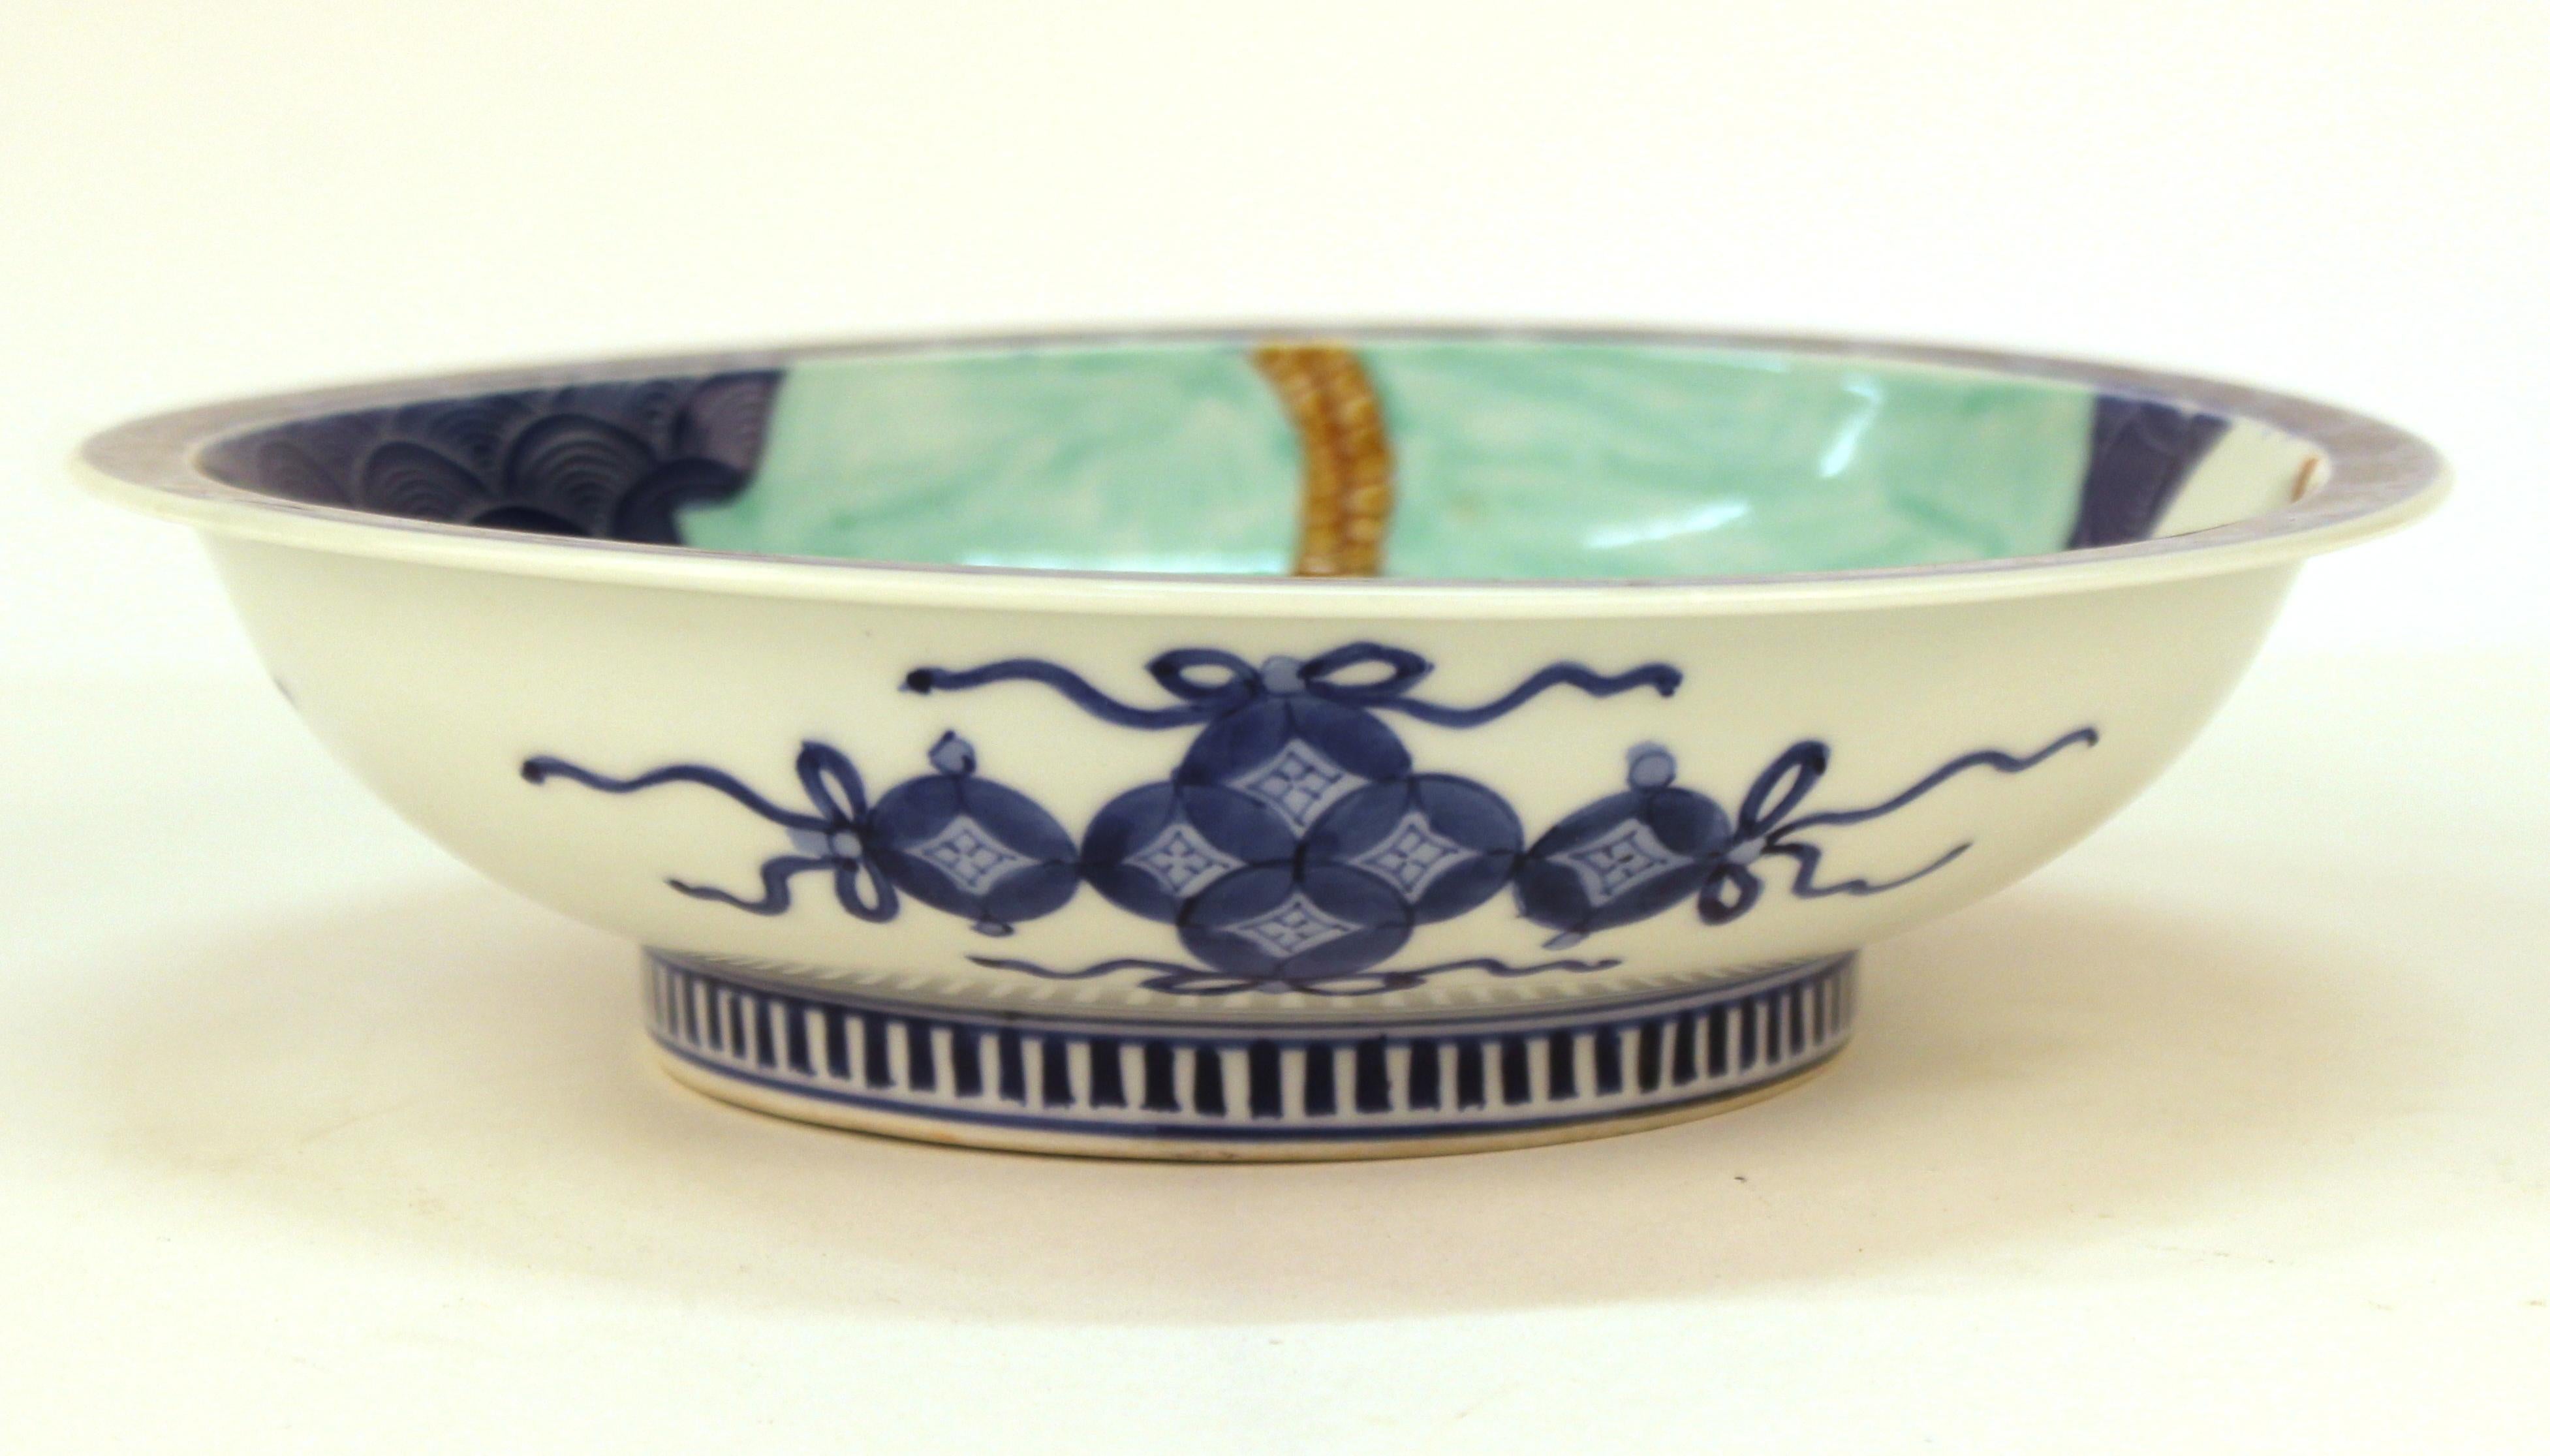 Assiette bleue en porcelaine Nabashima de la période Edo avec un motif de trois bouteilles de saké sur un fond de vagues bleues. La pièce date du milieu du XIXe siècle et est en excellent état.
Un exemple similaire a été vendu à Christies, provenant